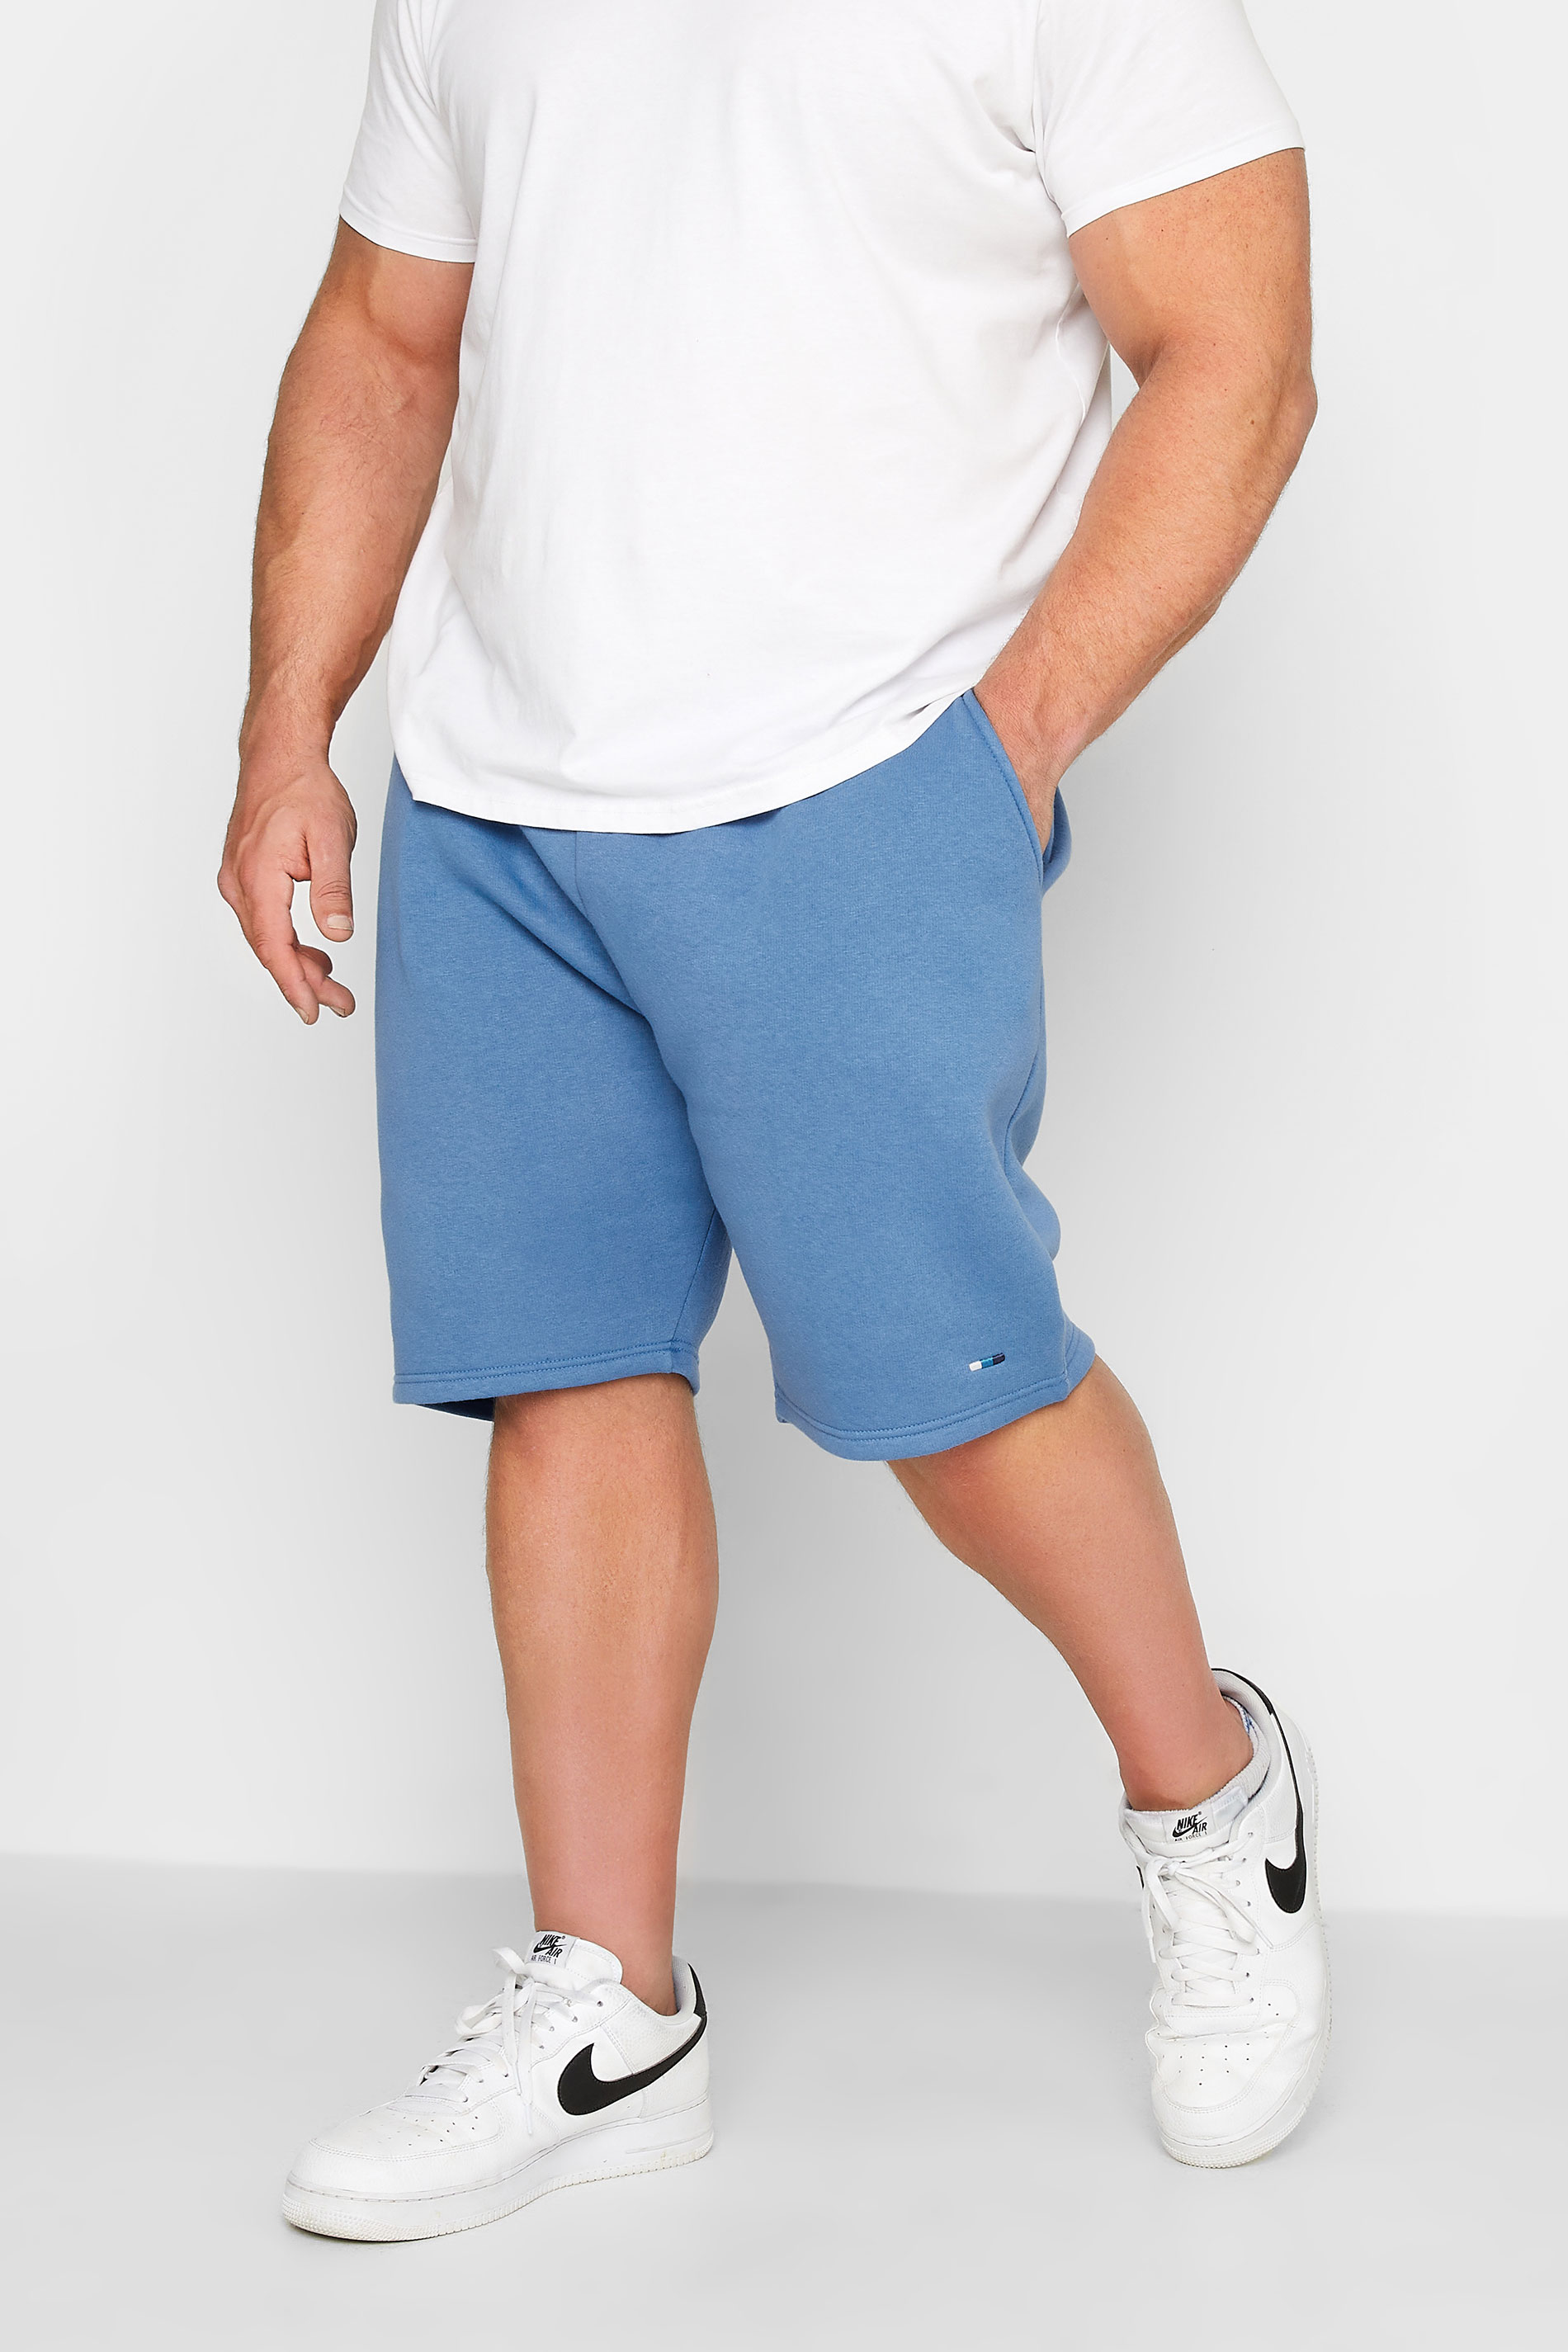 BadRhino Big & Tall Light Blue Essential Jogger Shorts| BadRhino 1